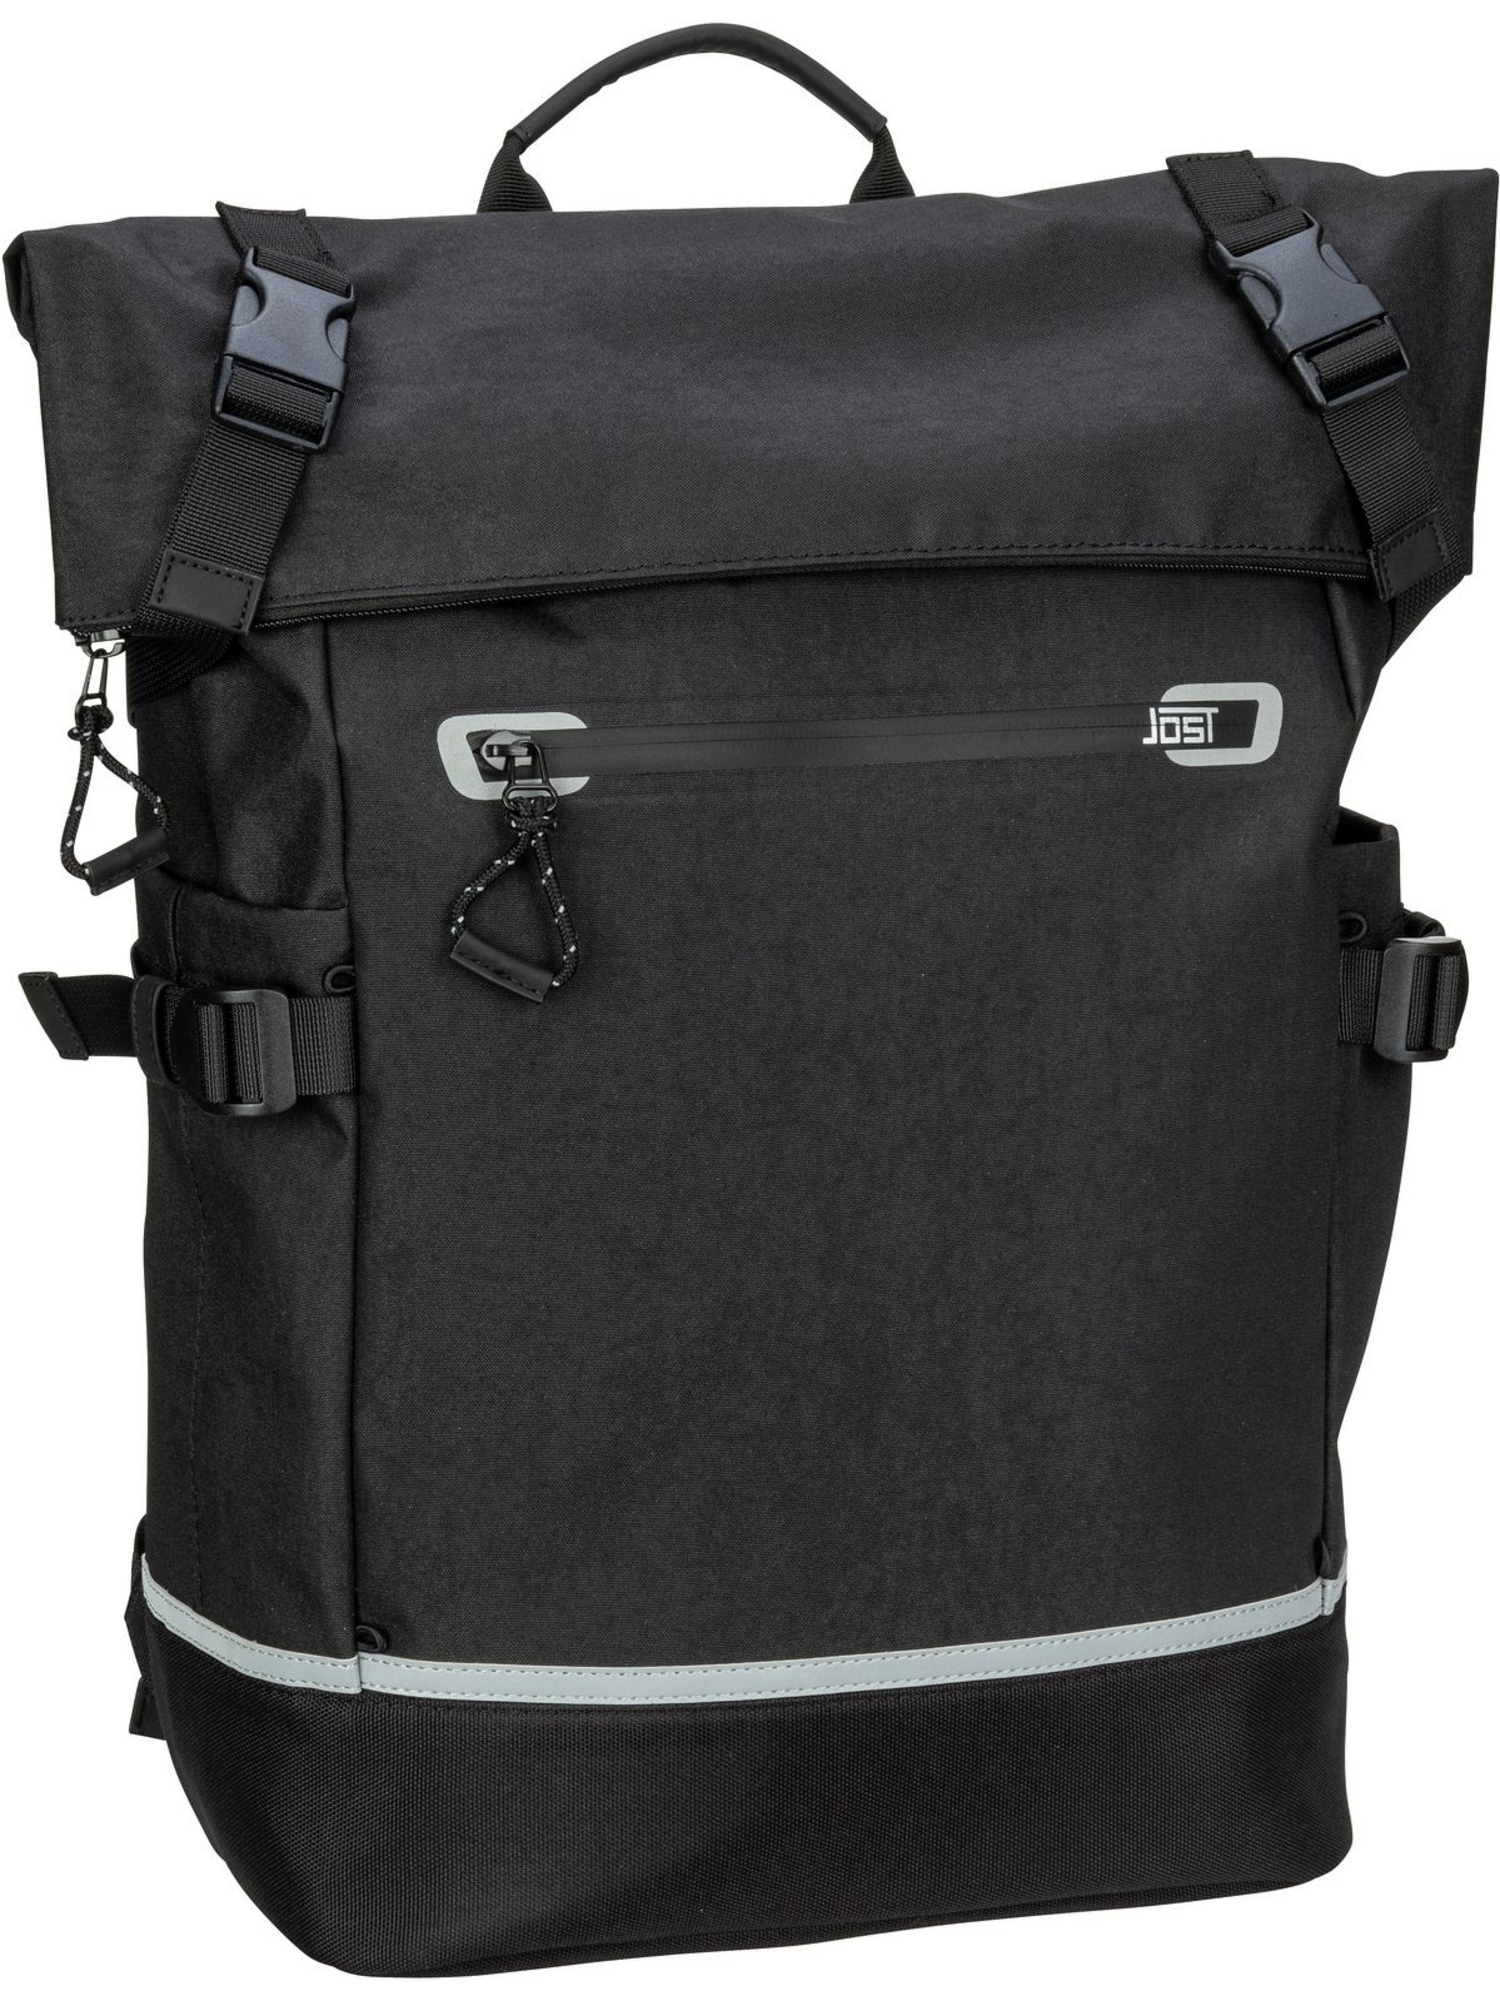 Рюкзак Jost Rolltop Lillehammer Business Backpack Courier, черный